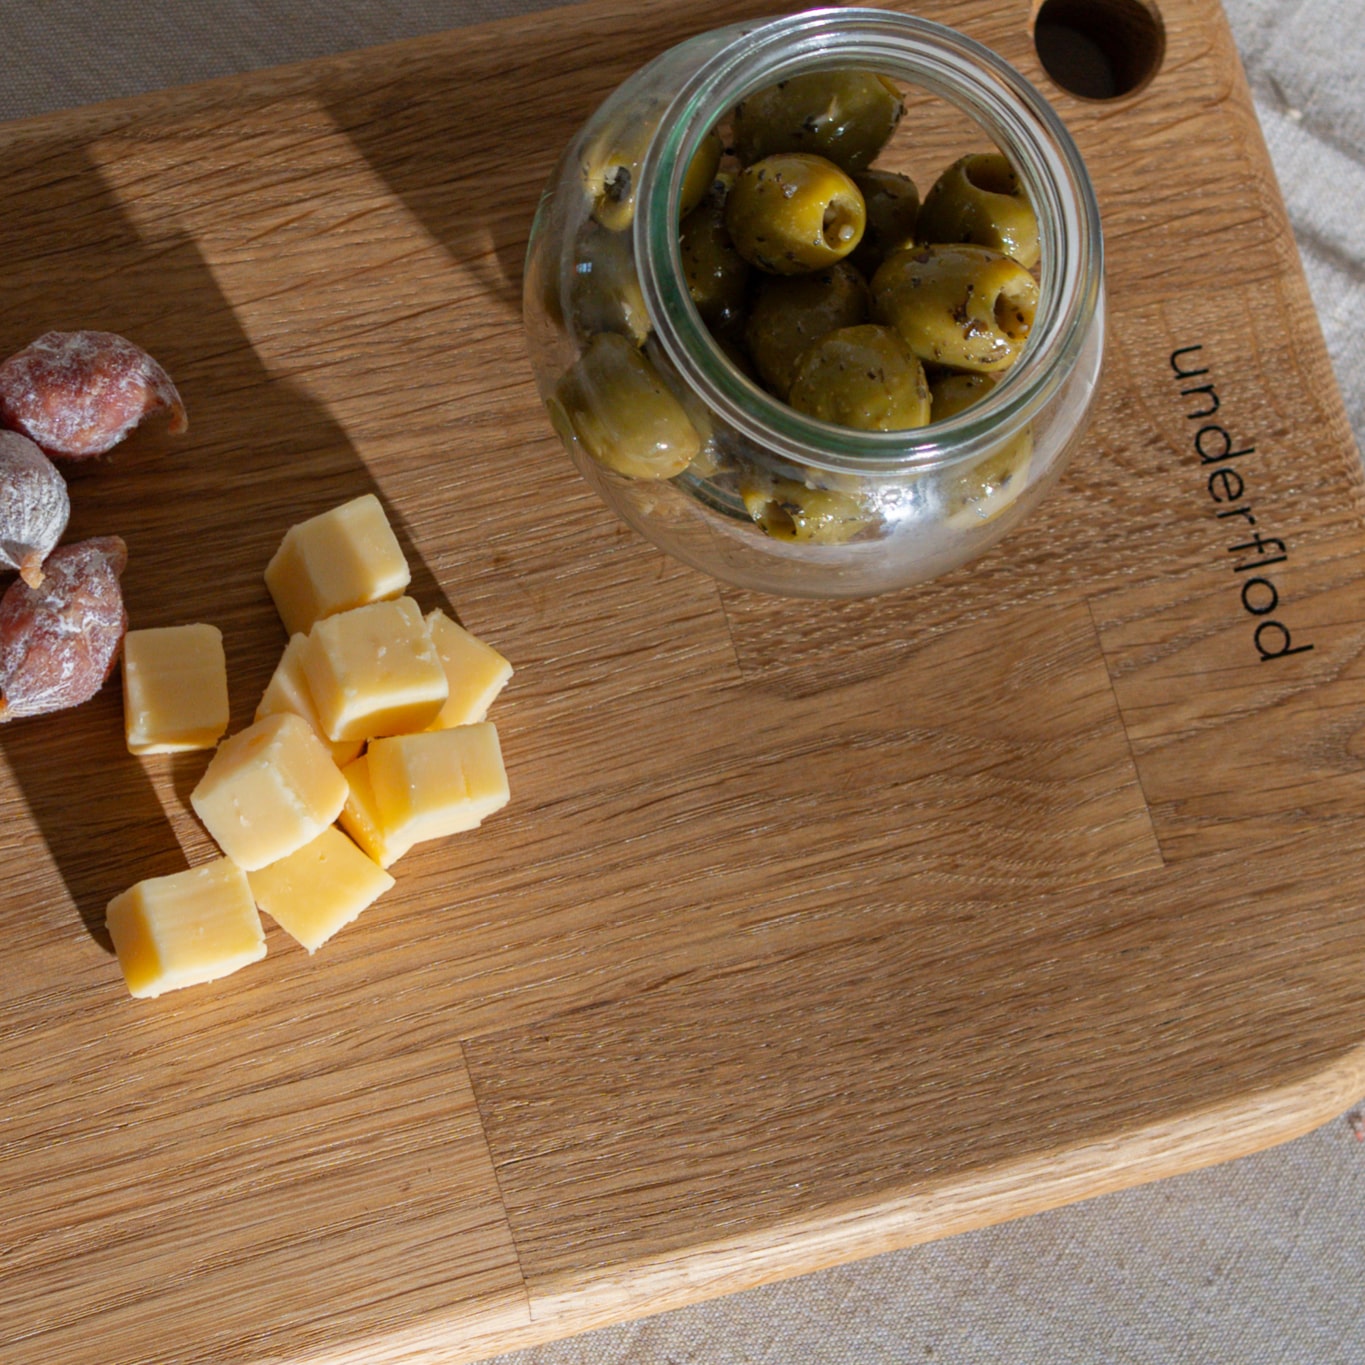 Billede taget oppe fra tapasbræt med ost, små tapaspølser og et glas med grønne oliven